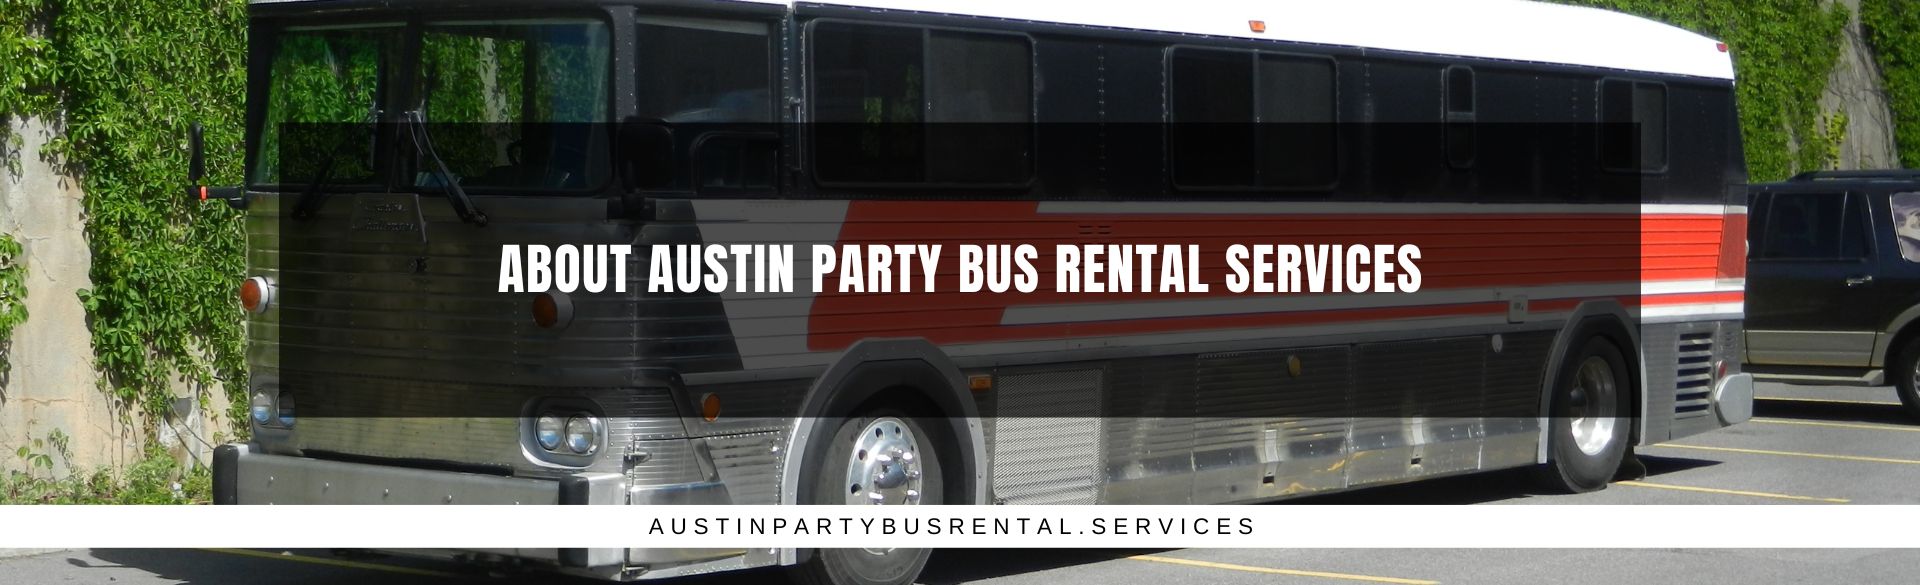 About Austin Party Bus Rental Services